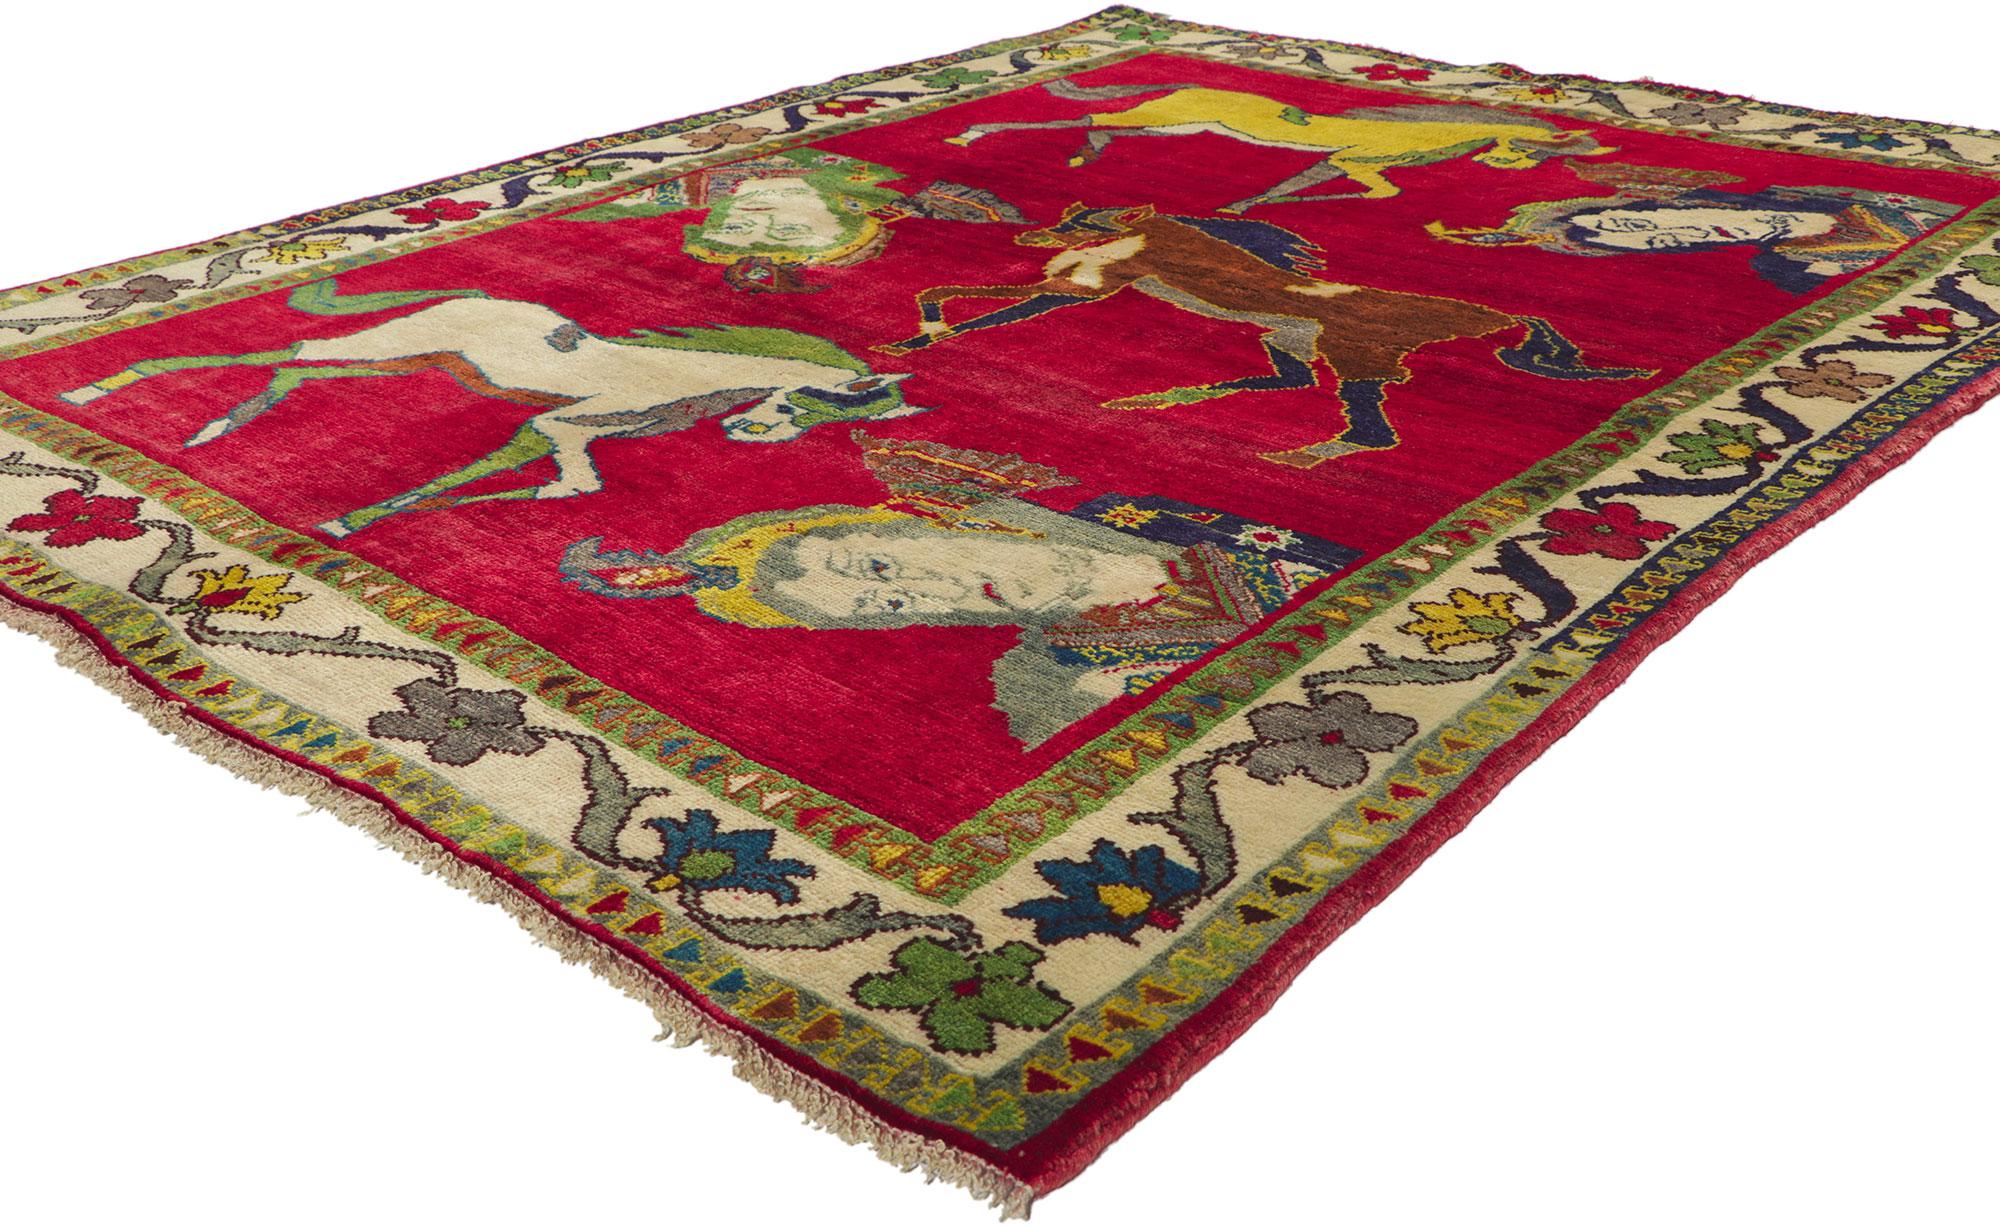 61033 Vintage Persian Shiraz Bildteppich, 04'11 x 06'06.
Begeben Sie sich auf eine skurrile Eskapade, bei der sich globaler Chic und nomadischer Charme in diesem handgeknüpften persischen Shiraz-Teppich aus Wolle treffen - ein Stammesteppich, der